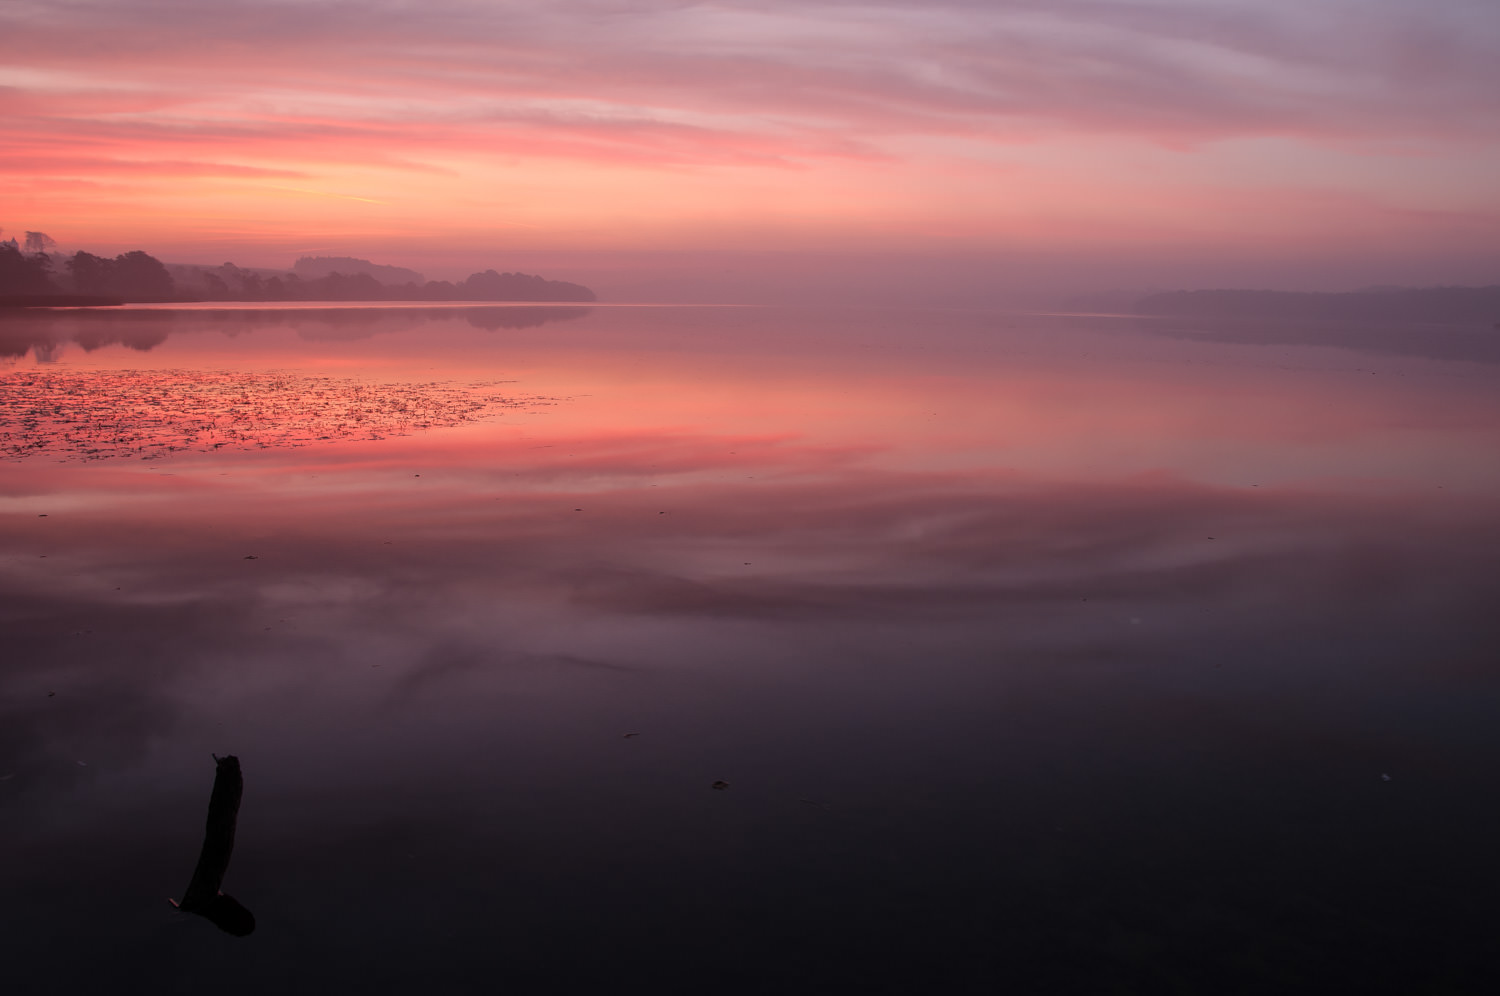 Et klassisk landskabsbillede. Smuk solopgang, langsom lukker og kameraet på stativ. Fussingø ved Randers. Grej: Nikon D300s + Tamron 17-35 f/2.8-4. Indstillinger: 2 sek., f/16, ISO-100, 17mm.